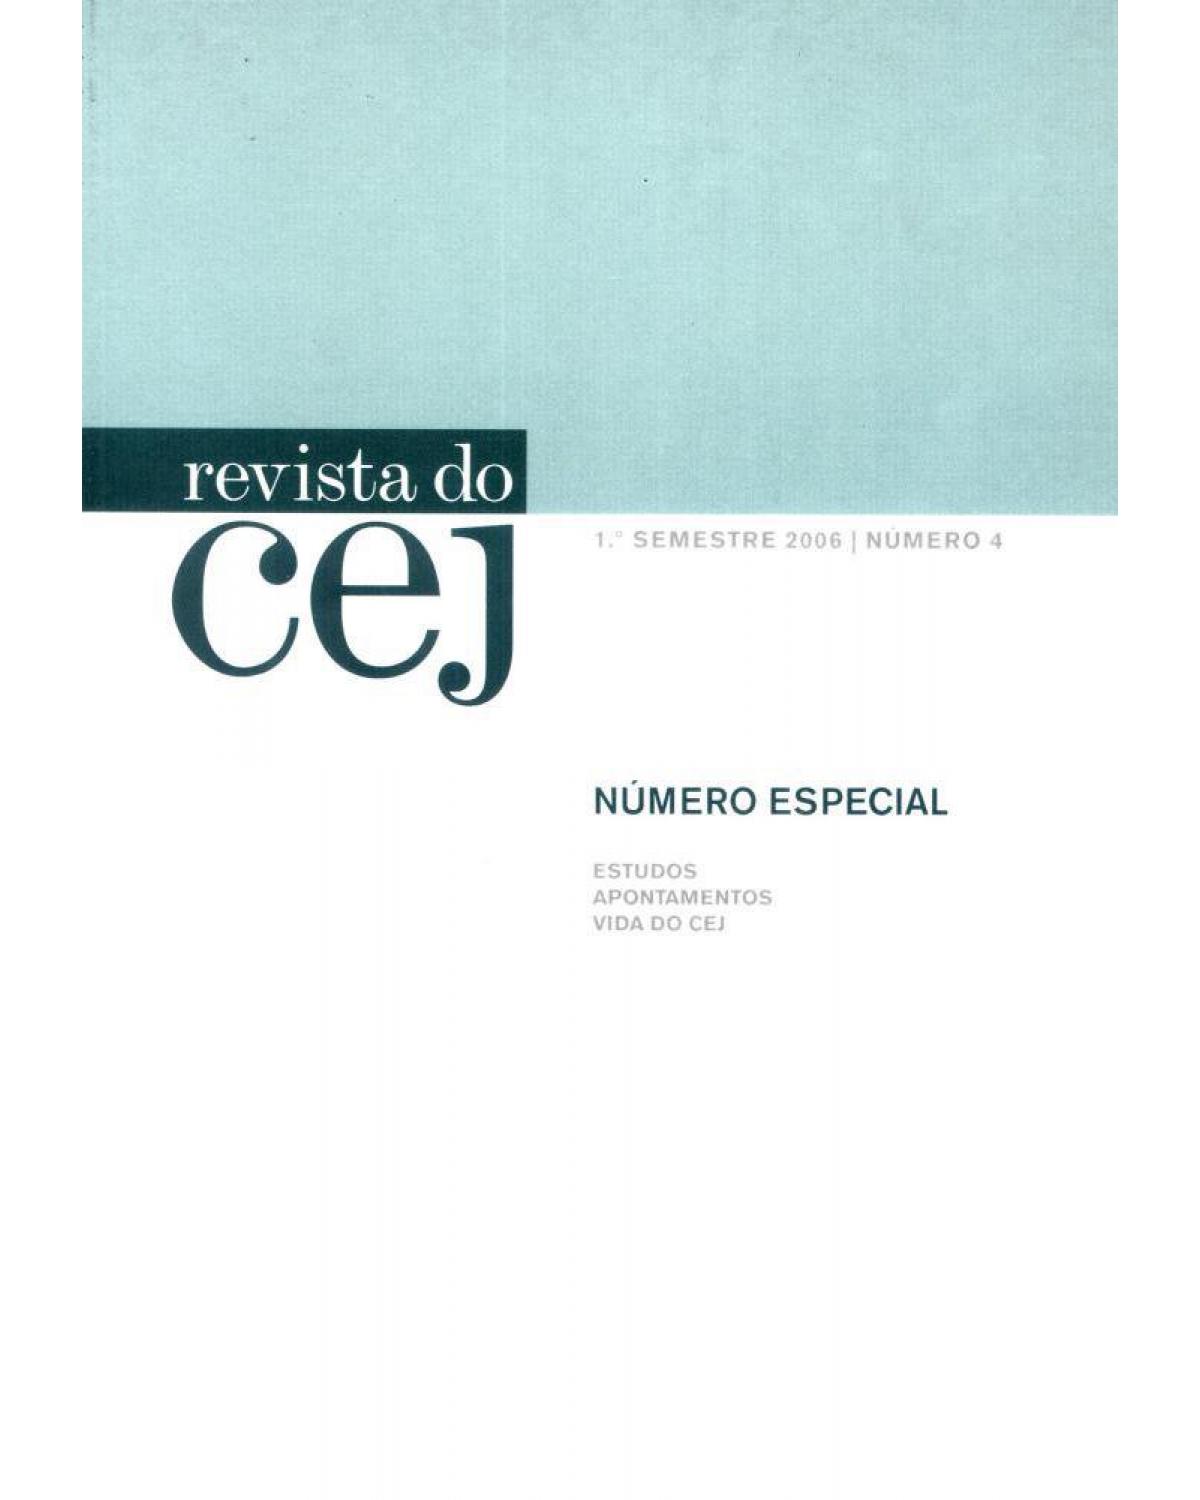 Revista do CEJ - Volume 4: nº 4 - 1º semestre 2006 - 1ª Edição | 2006